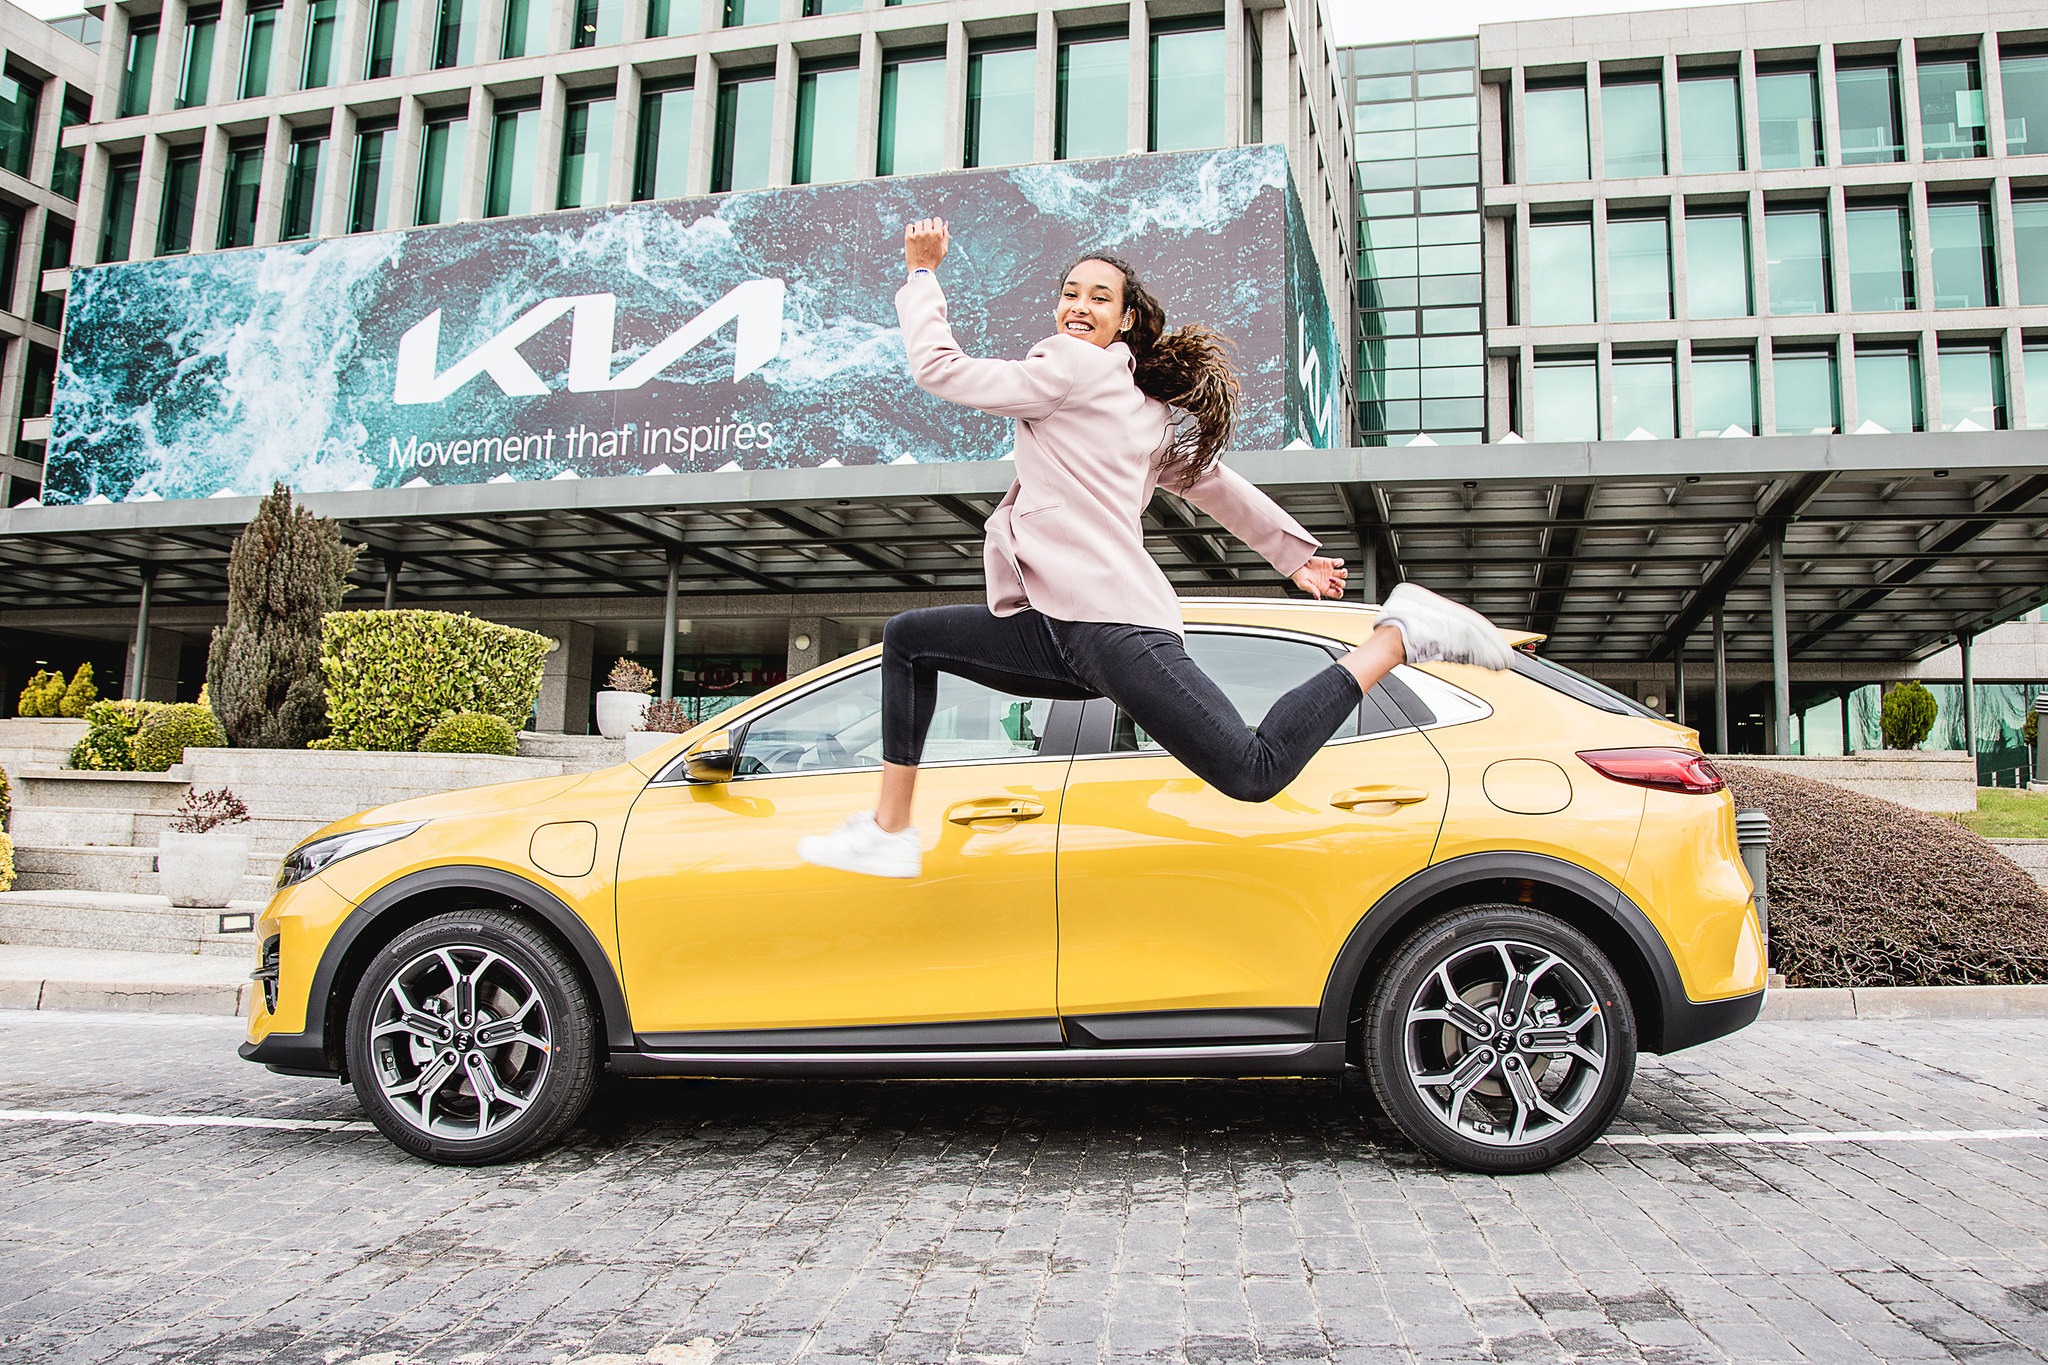 La heptatleta Mara Vicente, nueva embajadora de la marca Kia, junto con el nuevo Kia XCeed Hbrido enchufable.